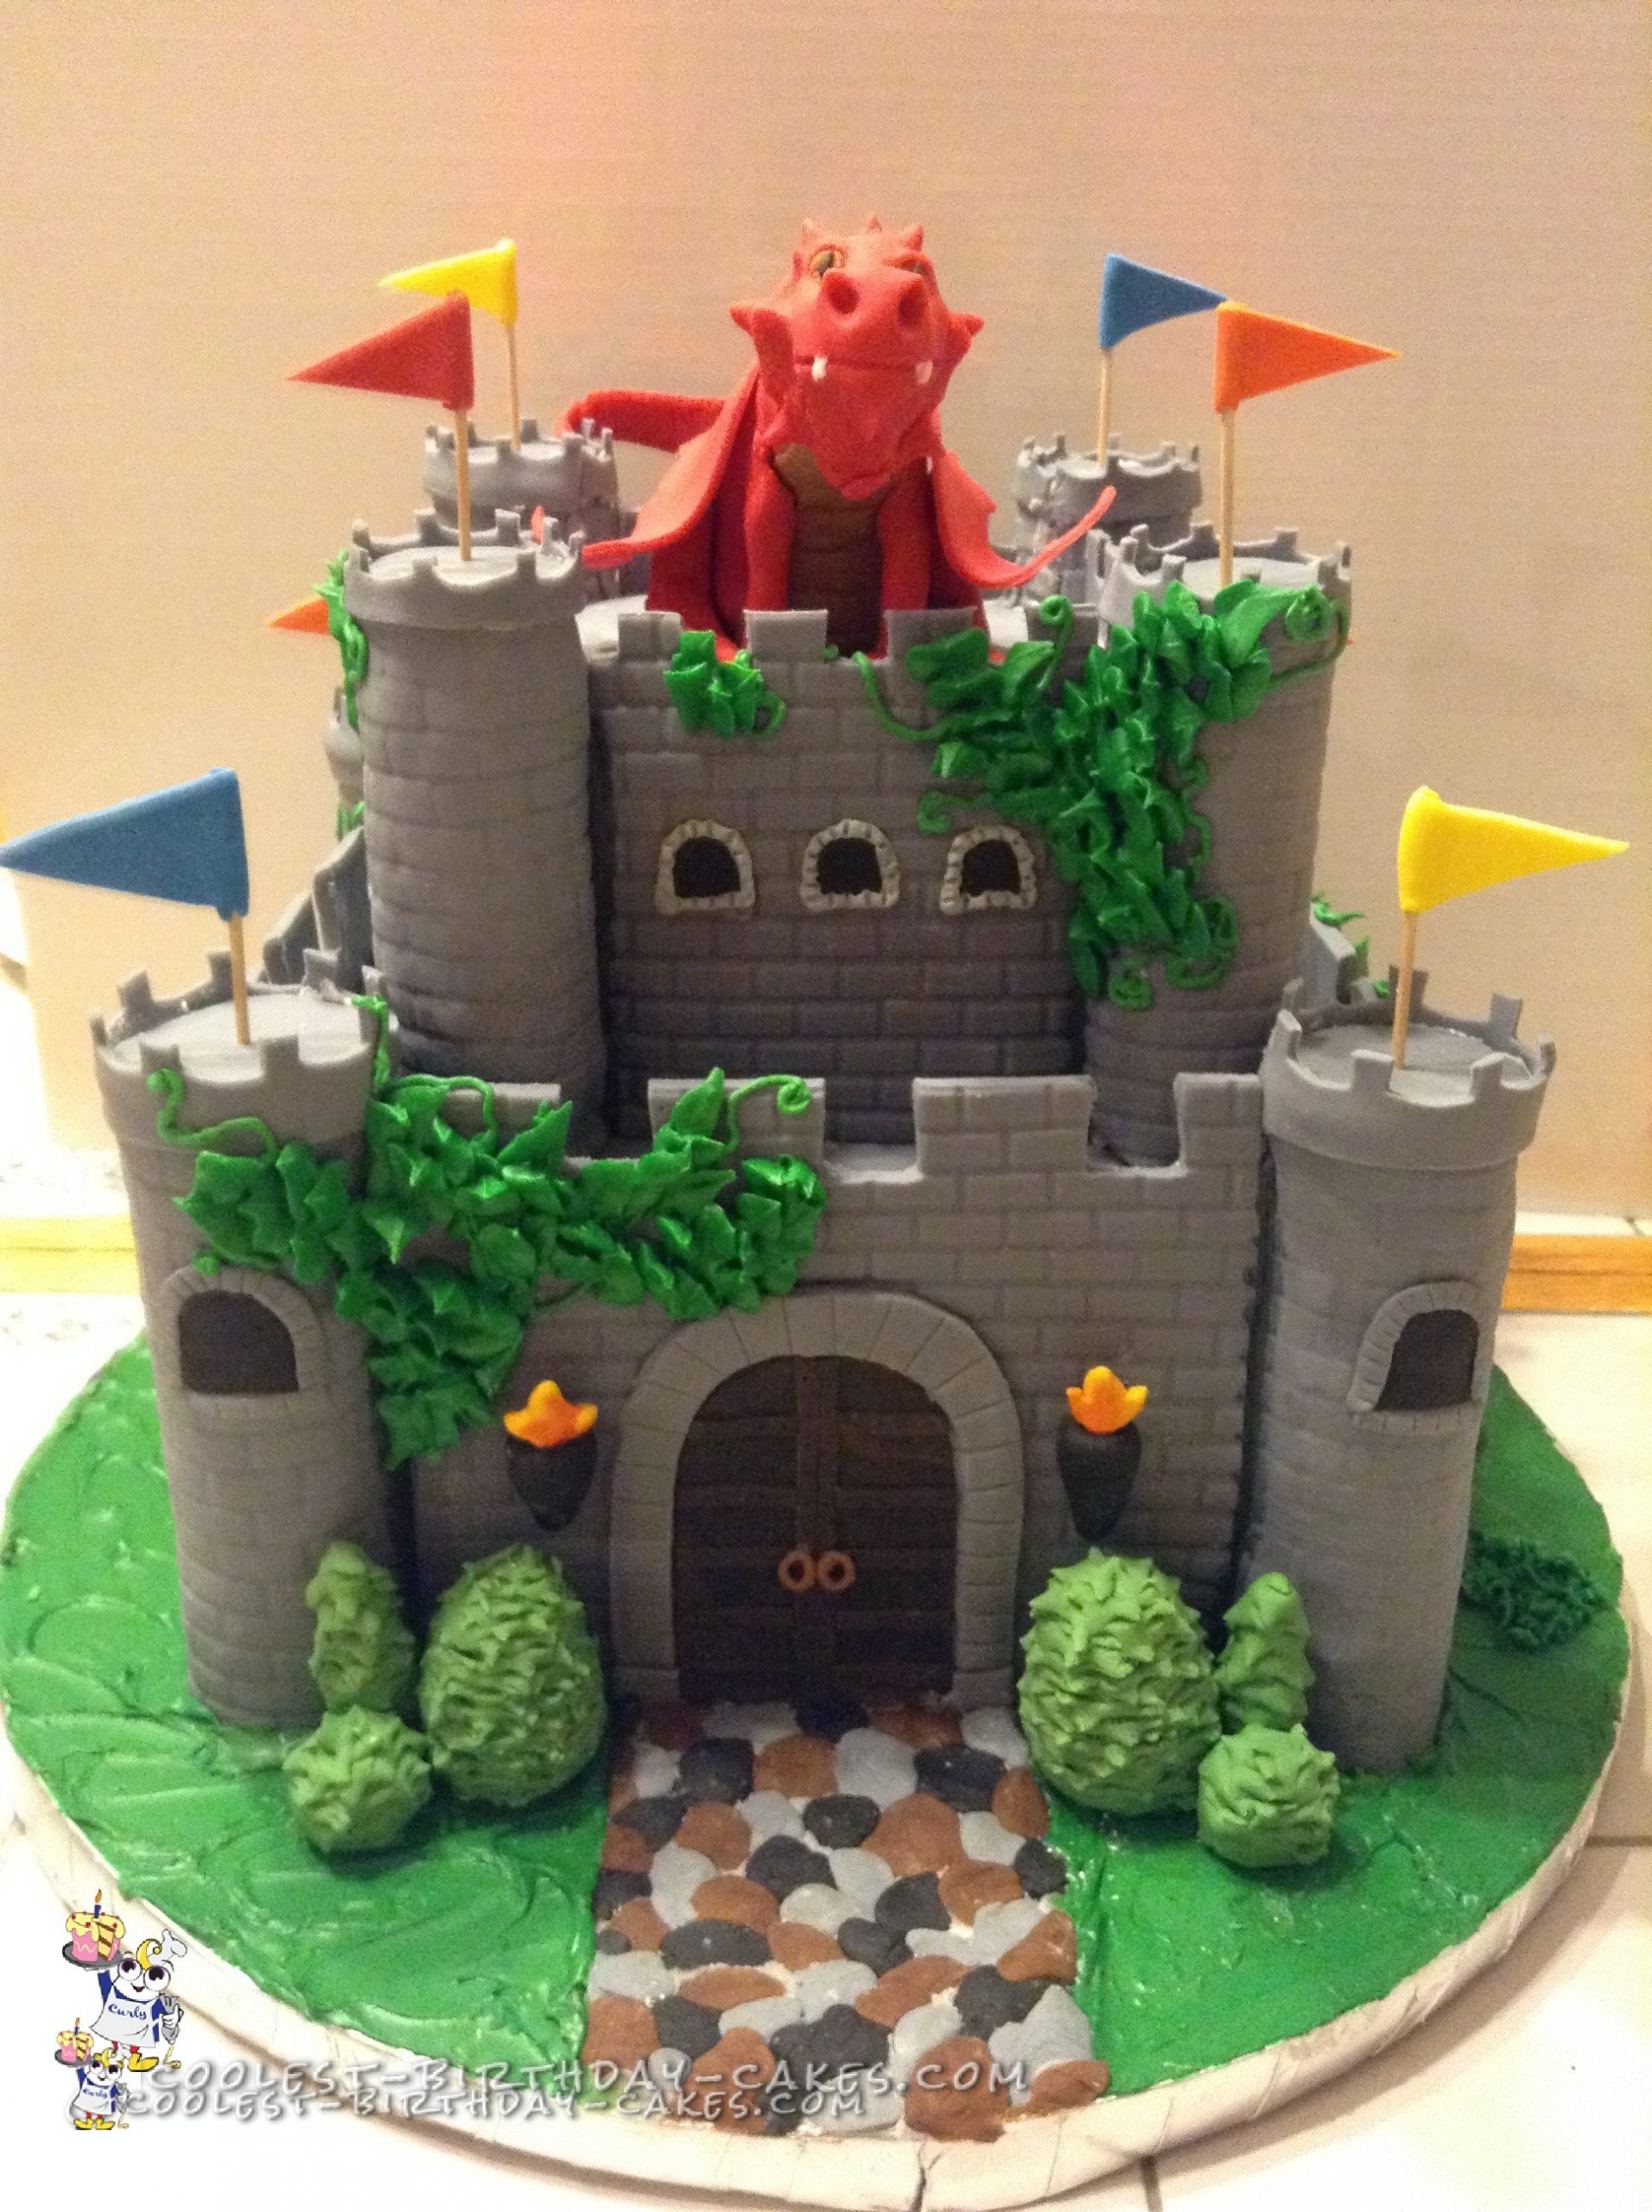 Coolest Medieval Fantasy Castle Cake